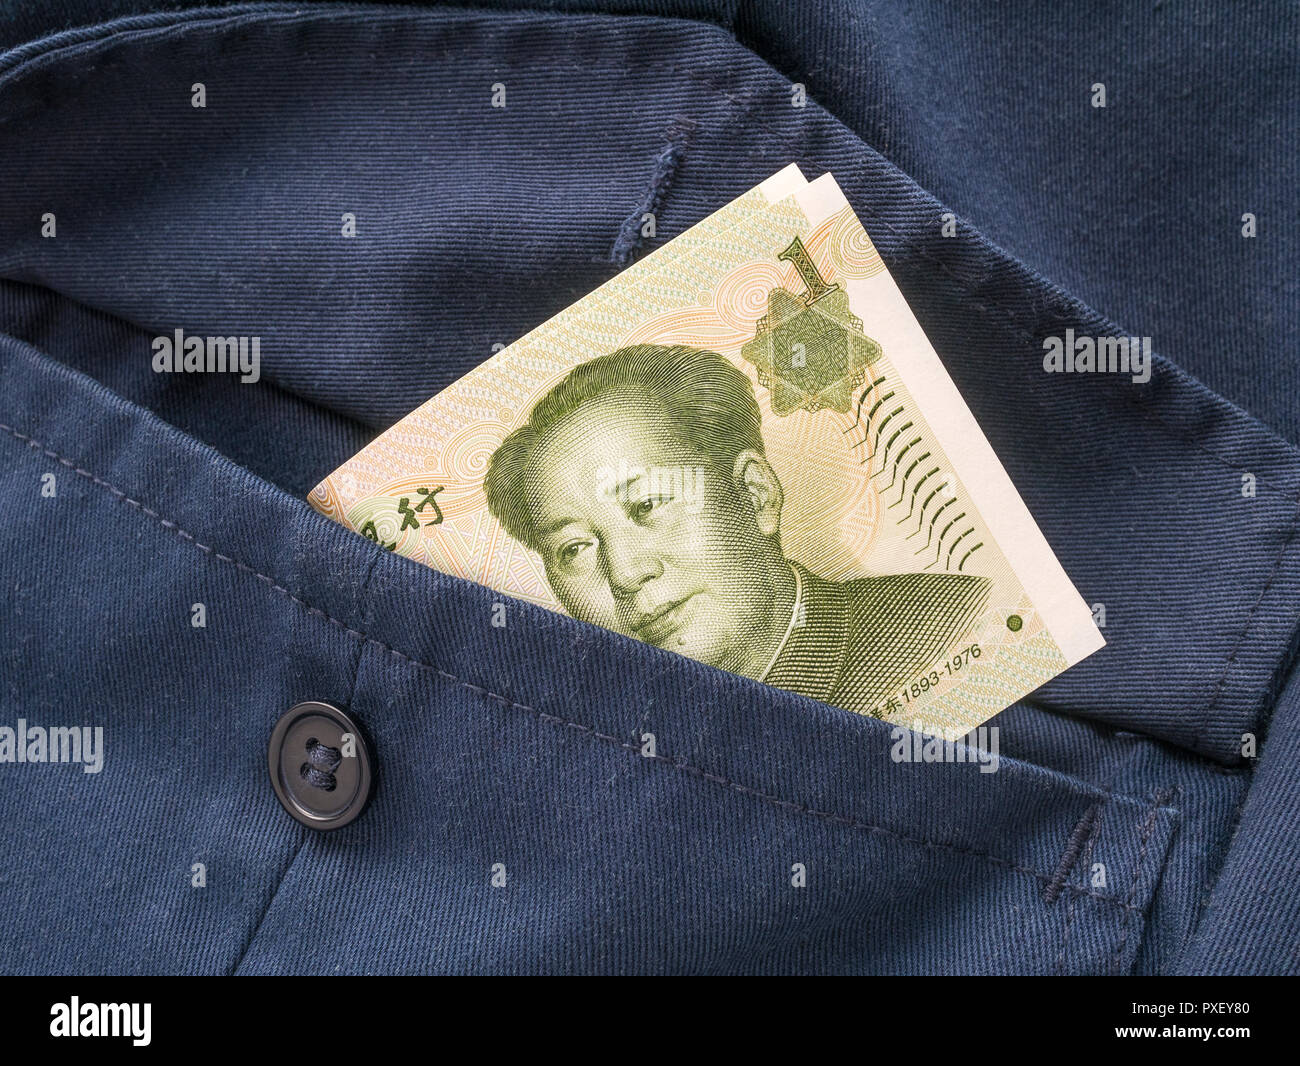 Yuan Renminbi chinois / billets avec pocket - métaphore de revenus personnels, les salaires chinois, les niveaux de salaire, la Chine industrie de l'habillement. Banque D'Images